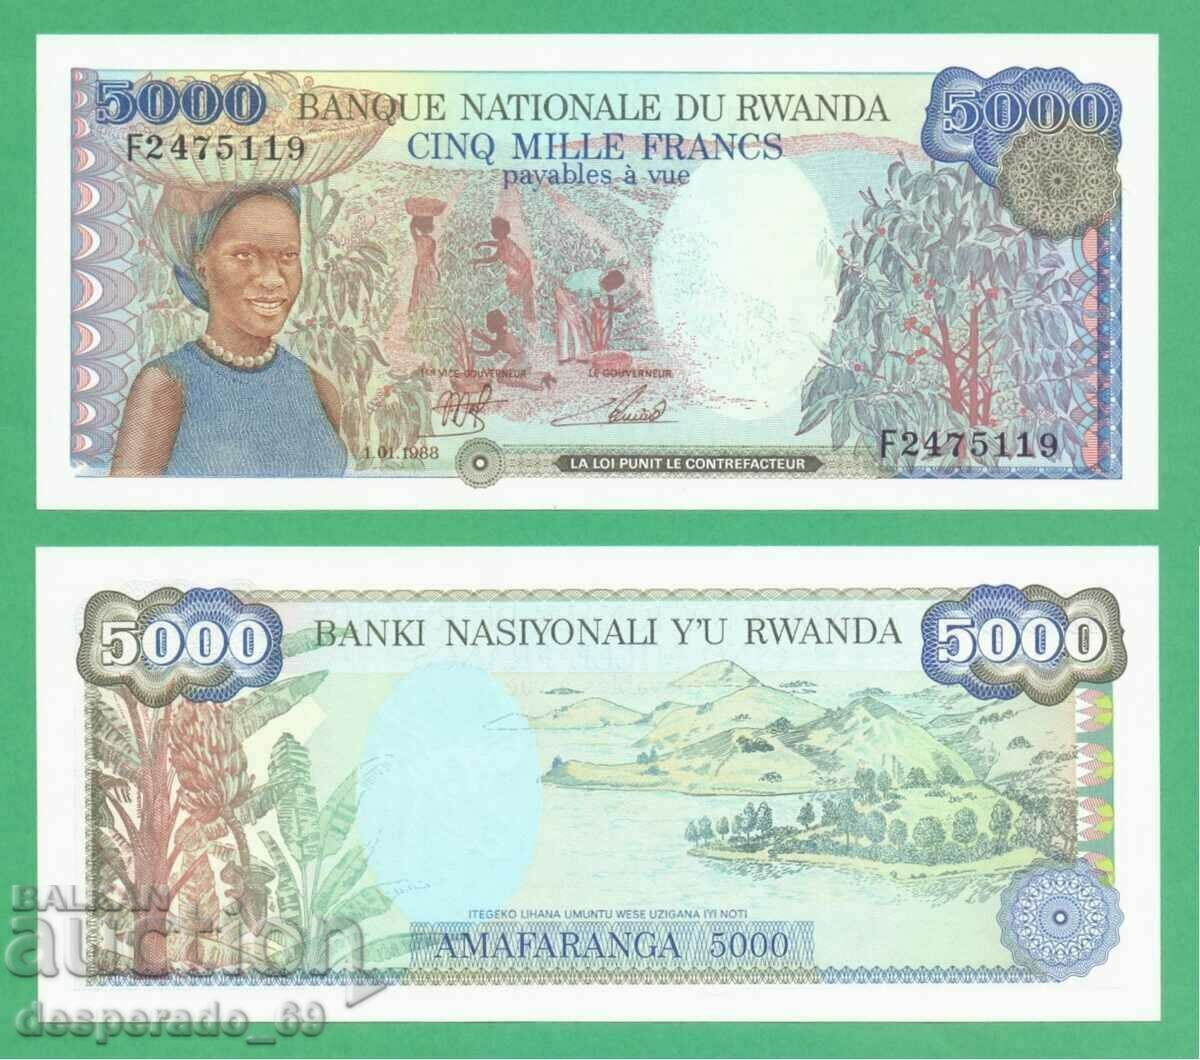 (¯`'•.¸ RWANDA 5000 franci 1988 UNC ¸.•'´¯)